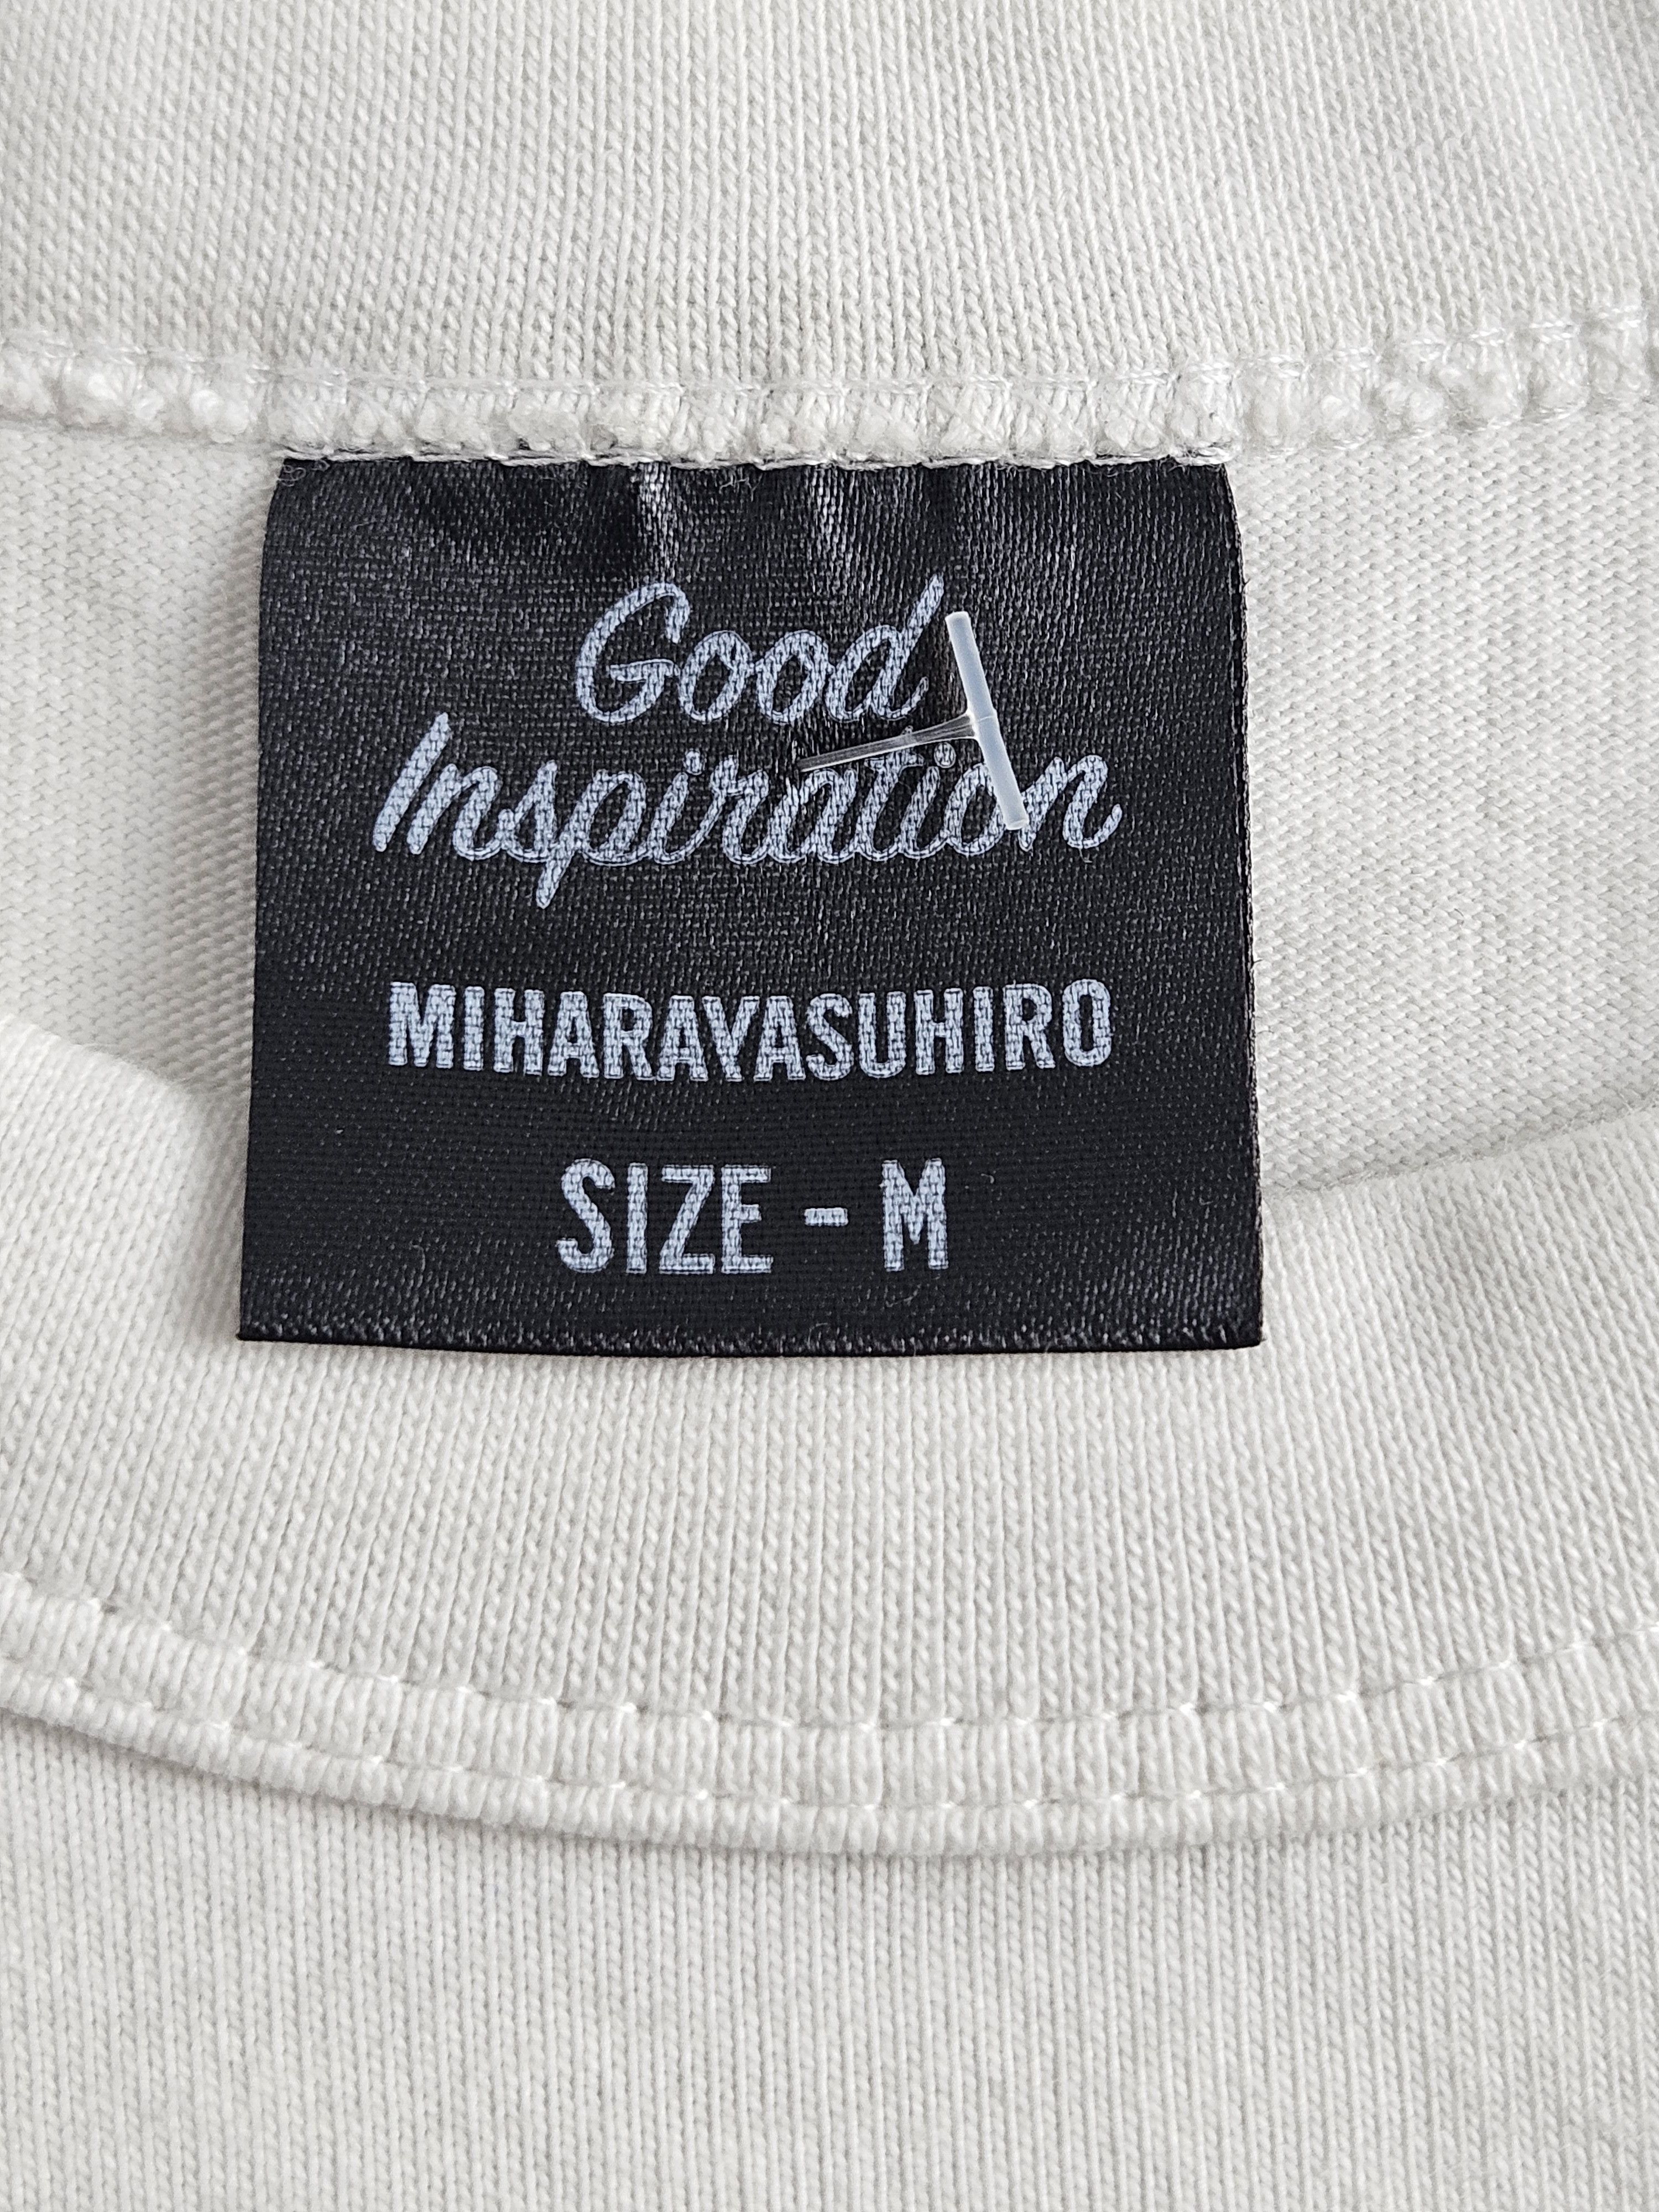 Miharaysuhiro shirt - 4